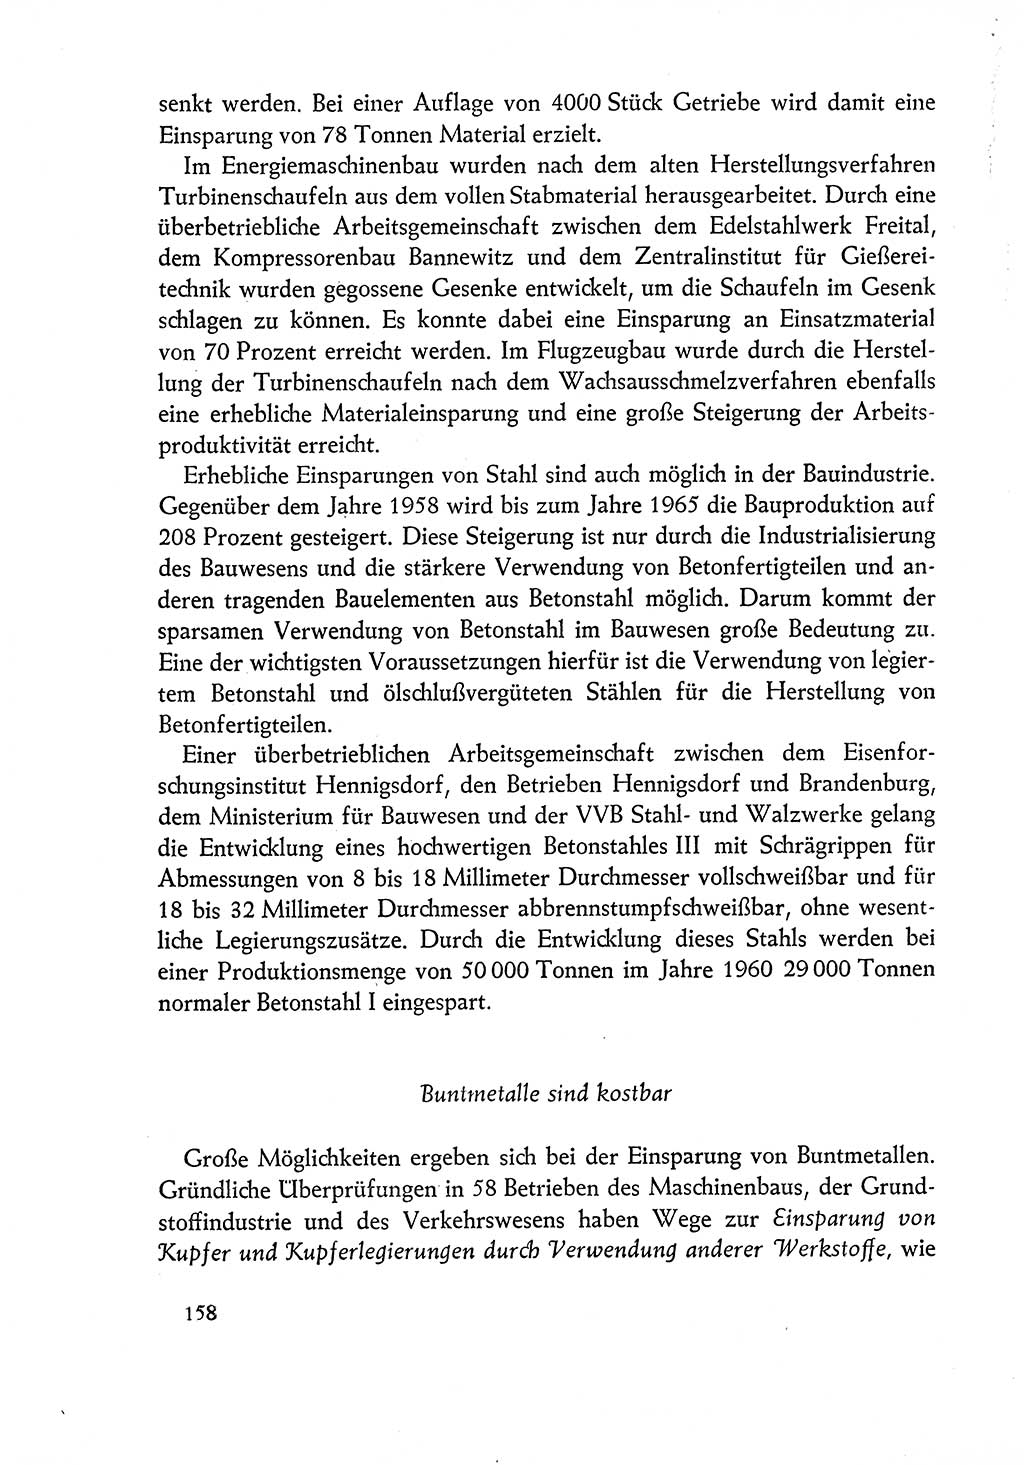 Dokumente der Sozialistischen Einheitspartei Deutschlands (SED) [Deutsche Demokratische Republik (DDR)] 1960-1961, Seite 158 (Dok. SED DDR 1960-1961, S. 158)